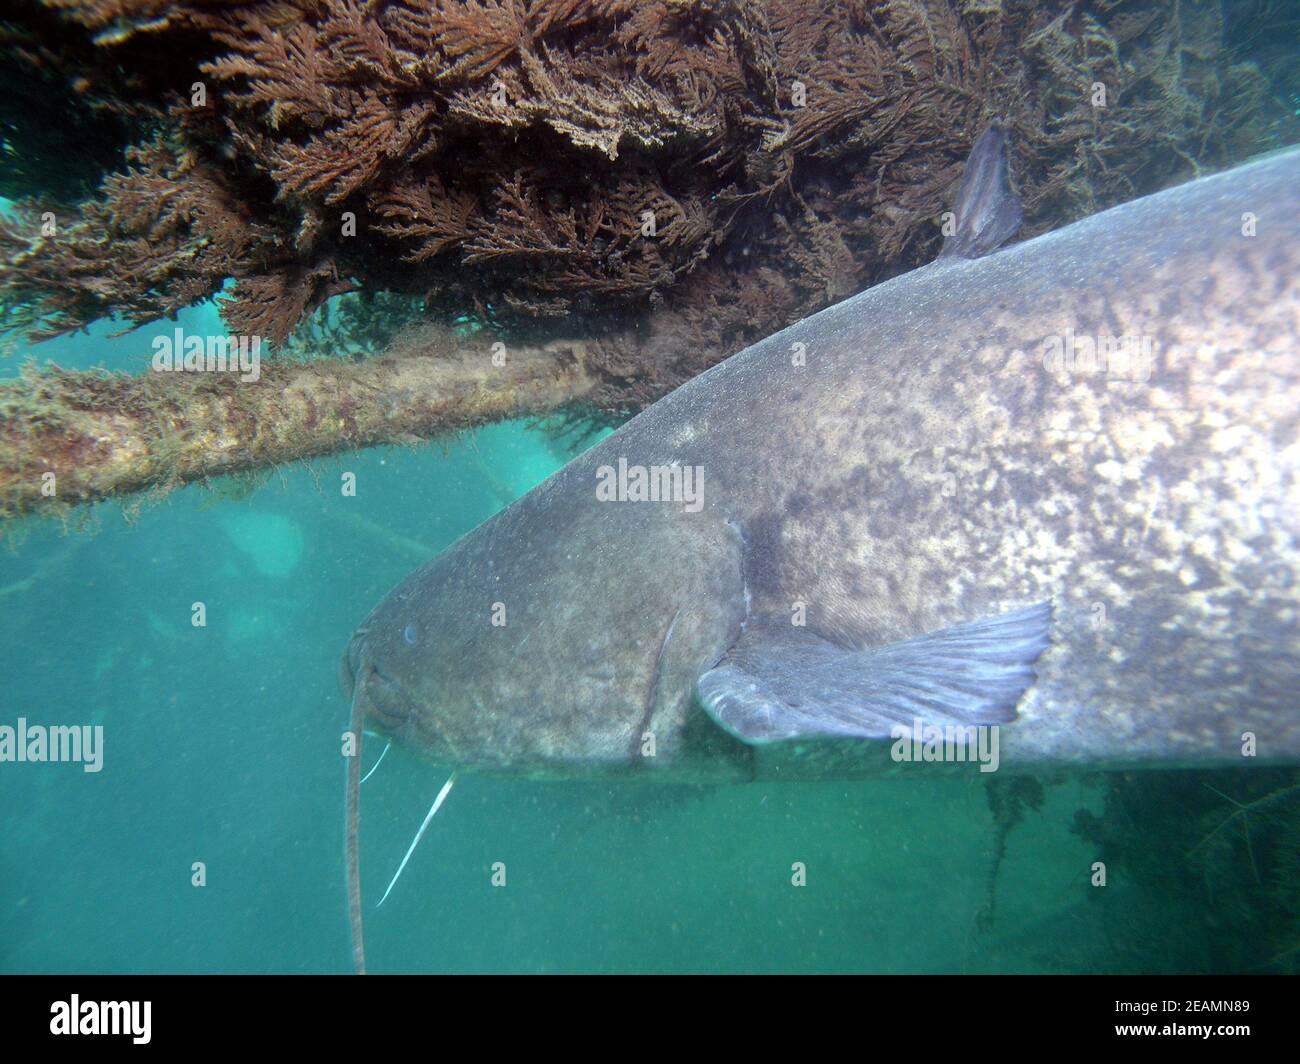 big wels catfish or sheatfish in Lake Kulkwitz Stock Photo